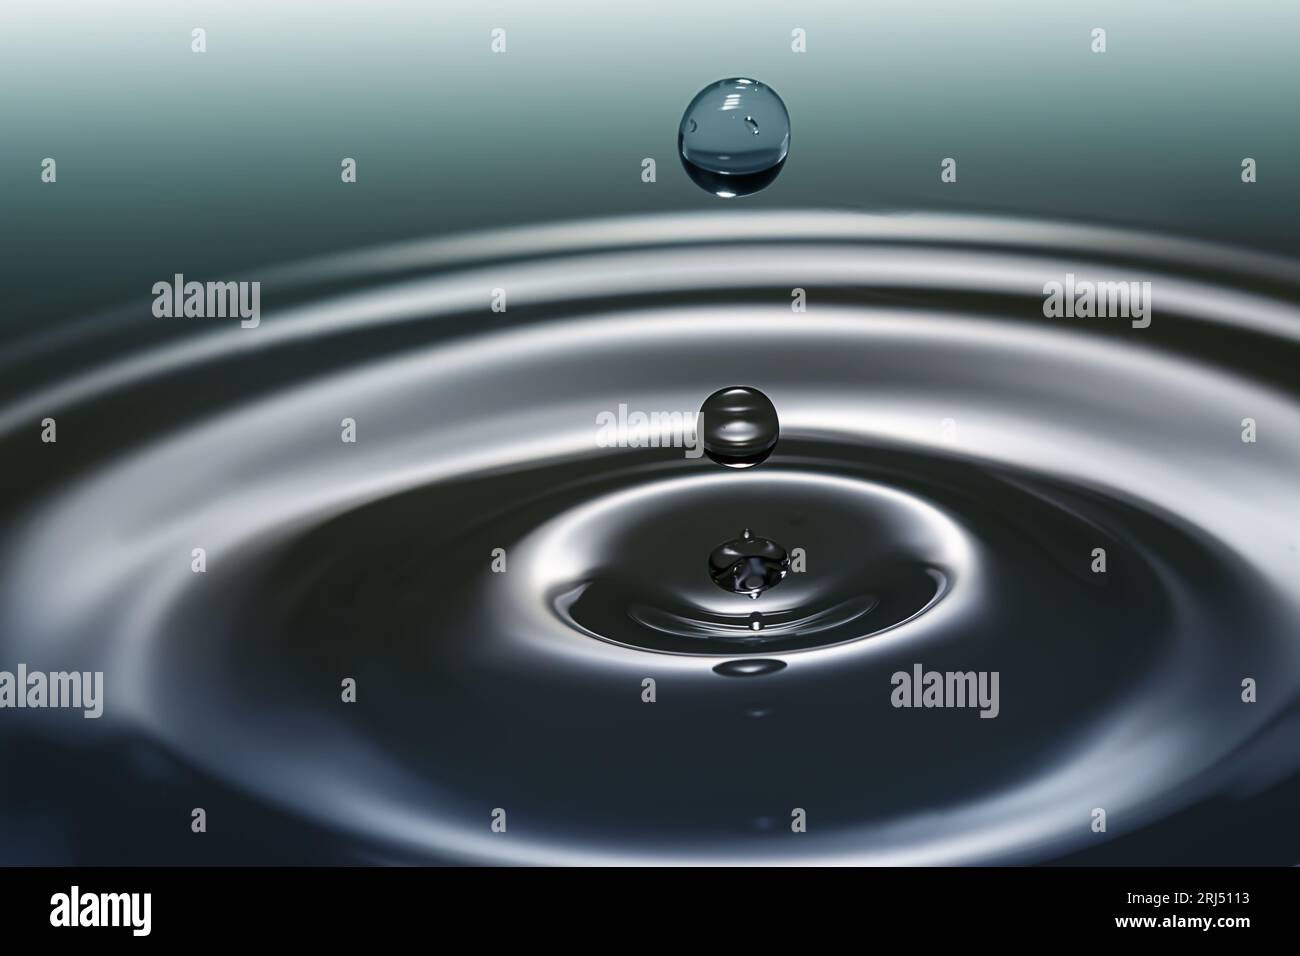 Goutte d'eau d'aqua claire éclaboussant en cercles concentriques, capturant une pureté rafraîchissante. Banque D'Images